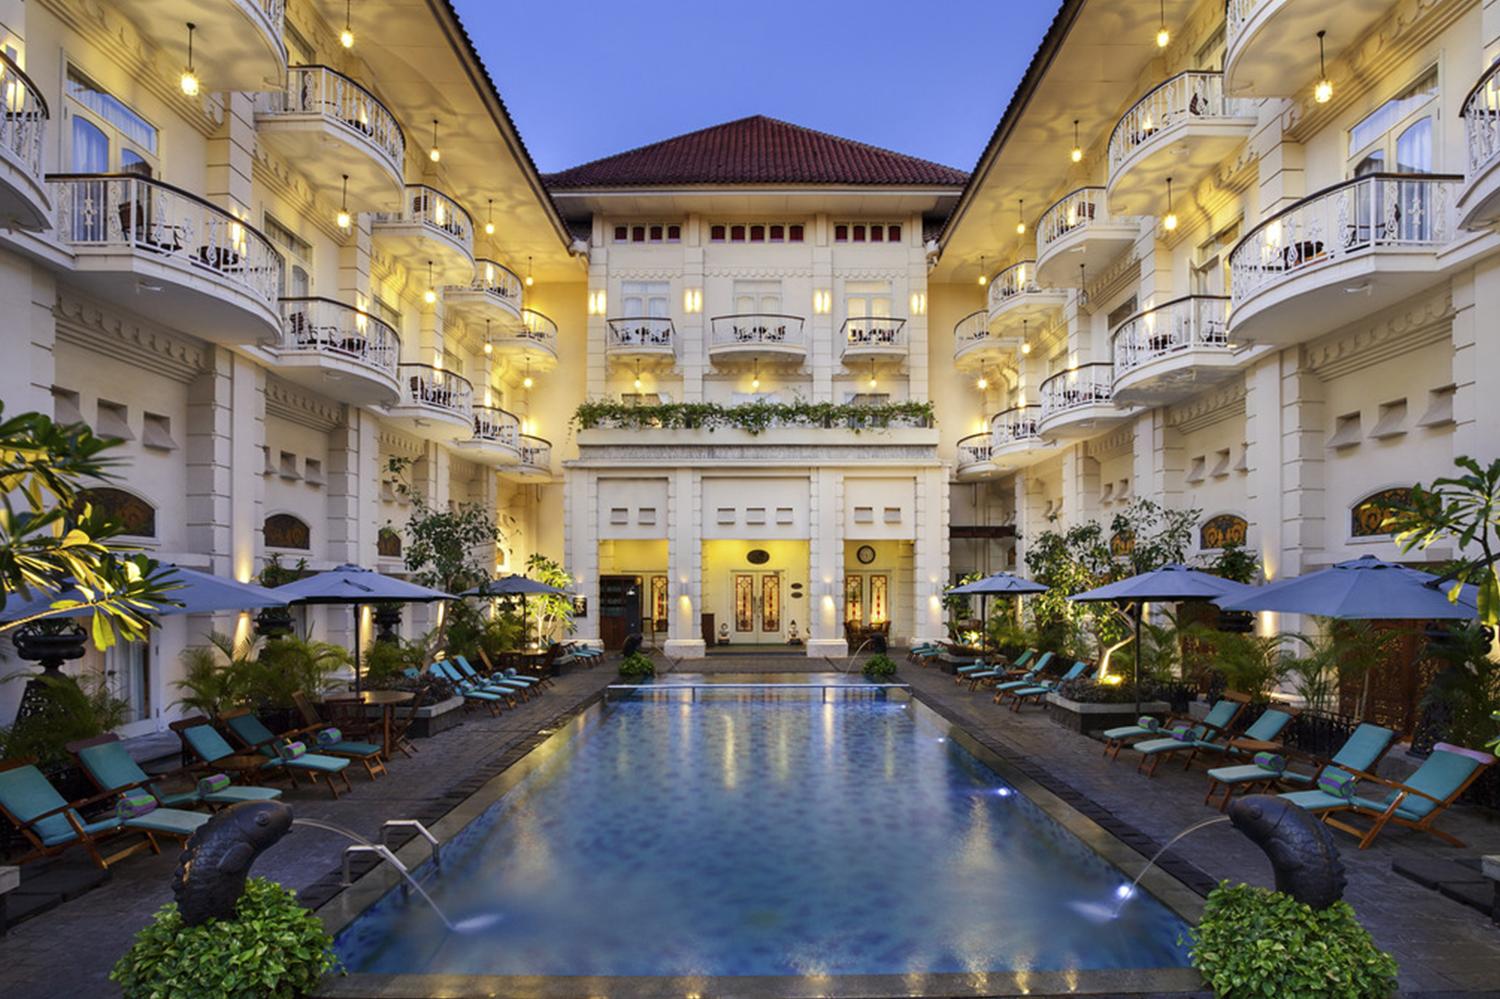 THE PHOENIX HOTEL YOGYAKARTA